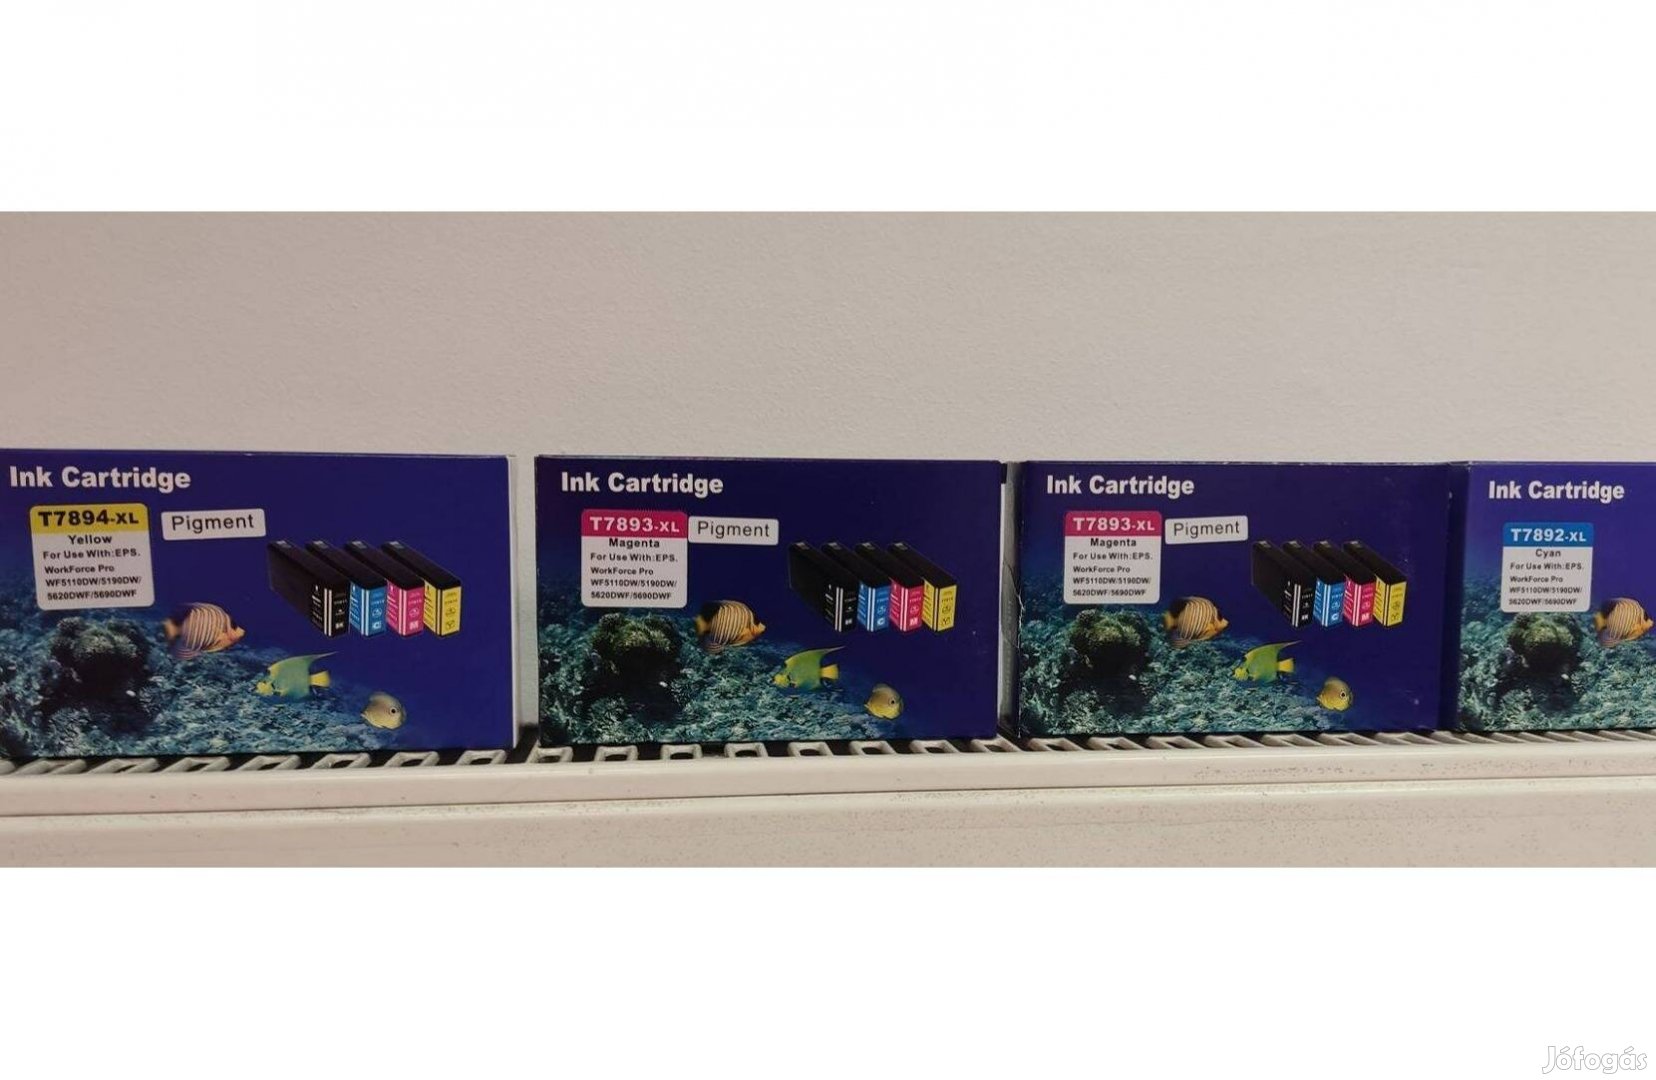 Epson színes utángyártott tintapatronok eladók